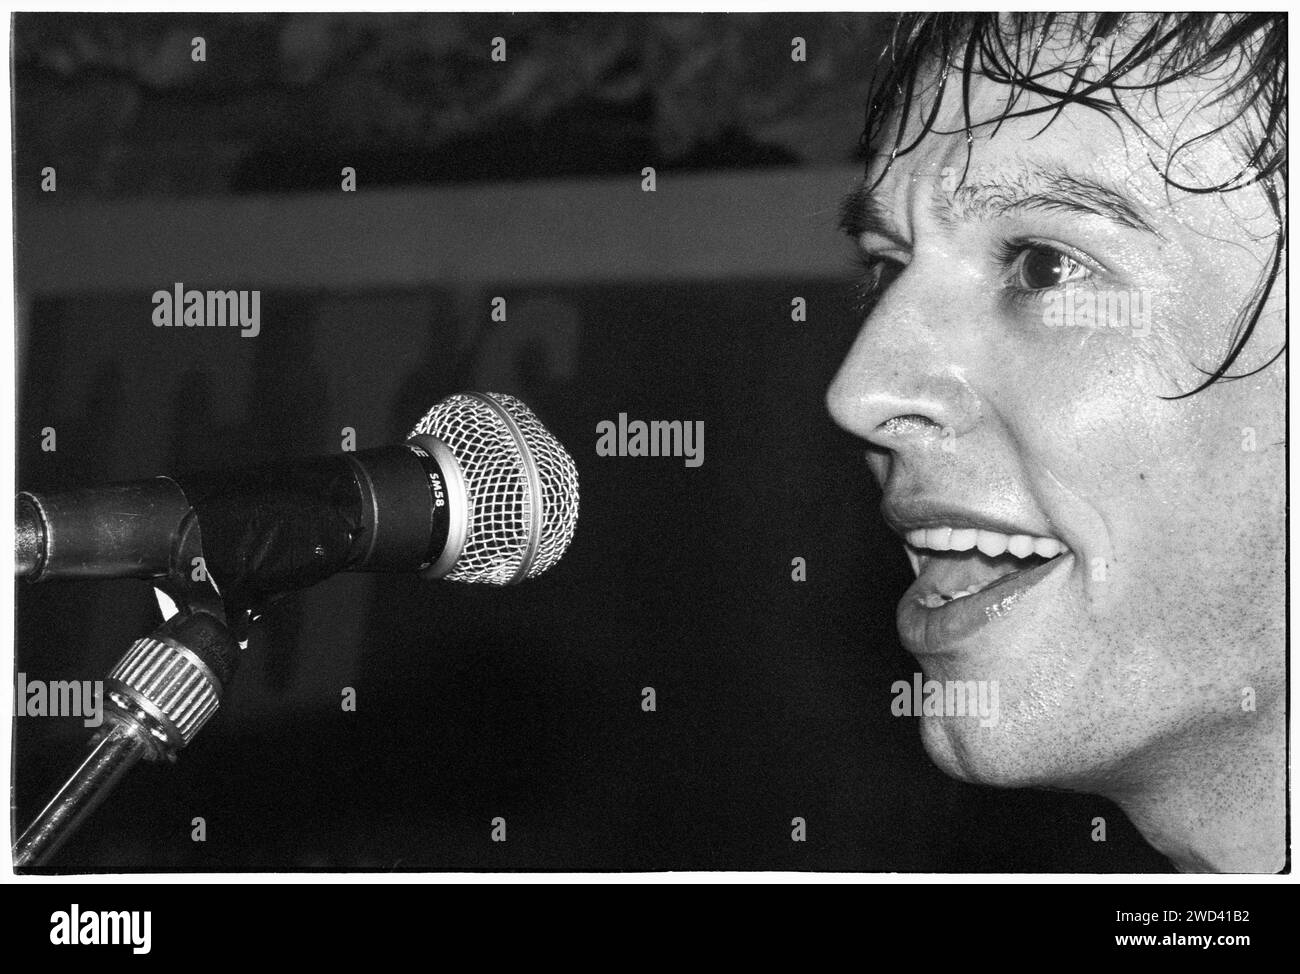 Ed Borrie von der Punkband S*M*A*S*H (SMASH) spielte am 21. März 1994 live in den legendären TJ’s in Newport, Wales, Großbritannien. Foto: Rob Watkins. INFO: SMASH, eine britische Punkband aus den 90ern, hat sich dem DIY-Ethos angeschlossen. Ihr energiegeladener Sound, angetrieben von politisch aufgeladenen Texten, fand eine Anhängerschaft. Hymnen wie „I Want to Kill Someone“ und „Shame“ fesselten den rebellischen Geist der Punkszene während ihrer aktiven Jahre. Stockfoto